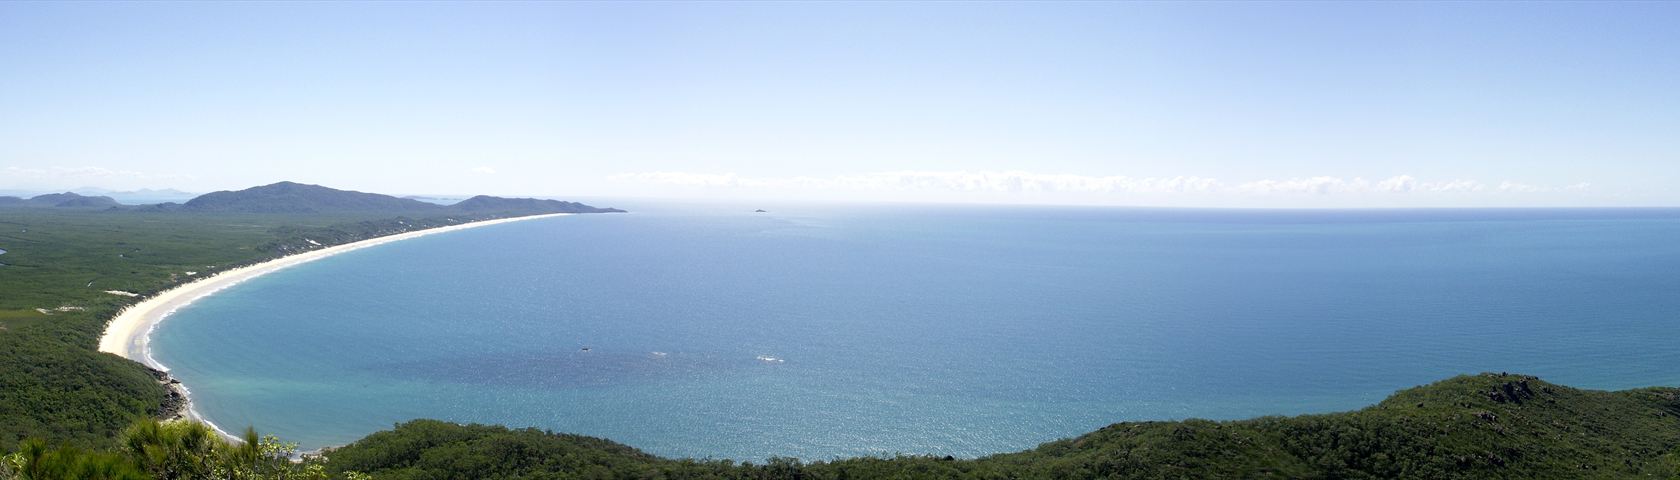 Nina Peak Panorama North